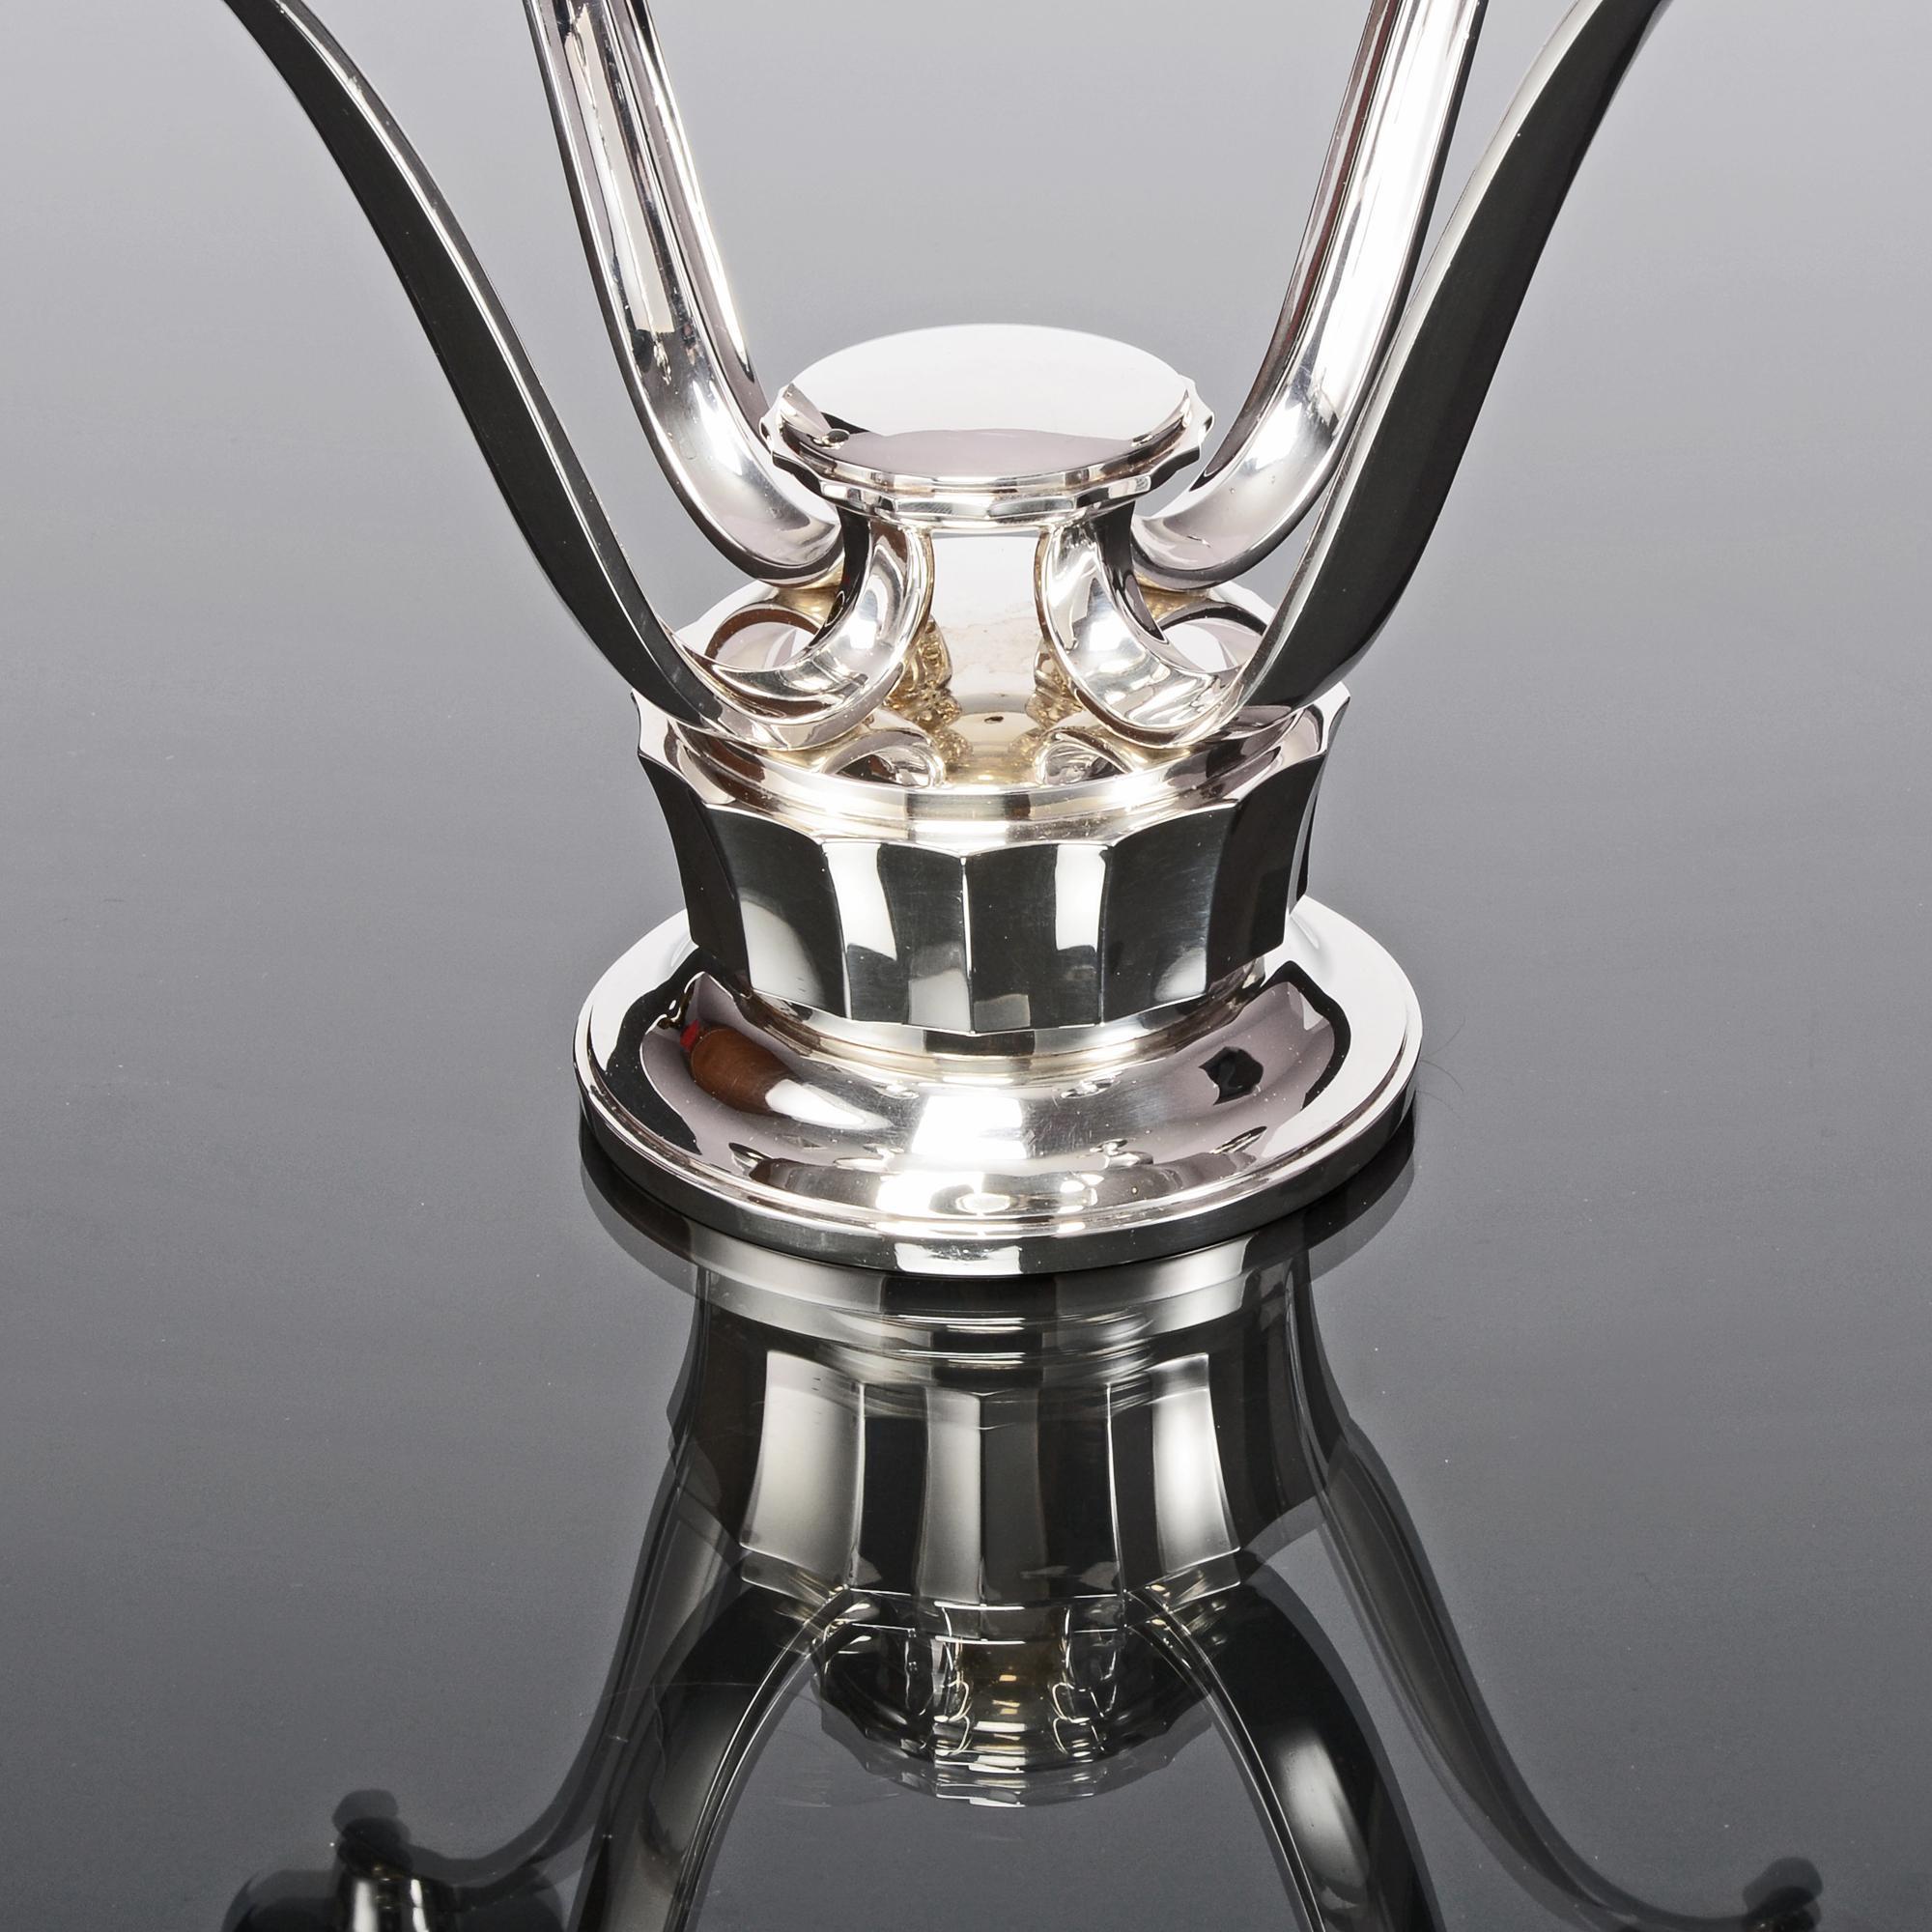 Stilvoller, moderner Silberleuchter aus dem Jahr 1960 von Asprey & Co, Juwelier der Krone. Der getäfelte Rundsockel trägt vier elegant geschwungene Arme, die jeweils von einem silbernen Kerzenhalter und einer Tropfschale gekrönt werden. Es handelt